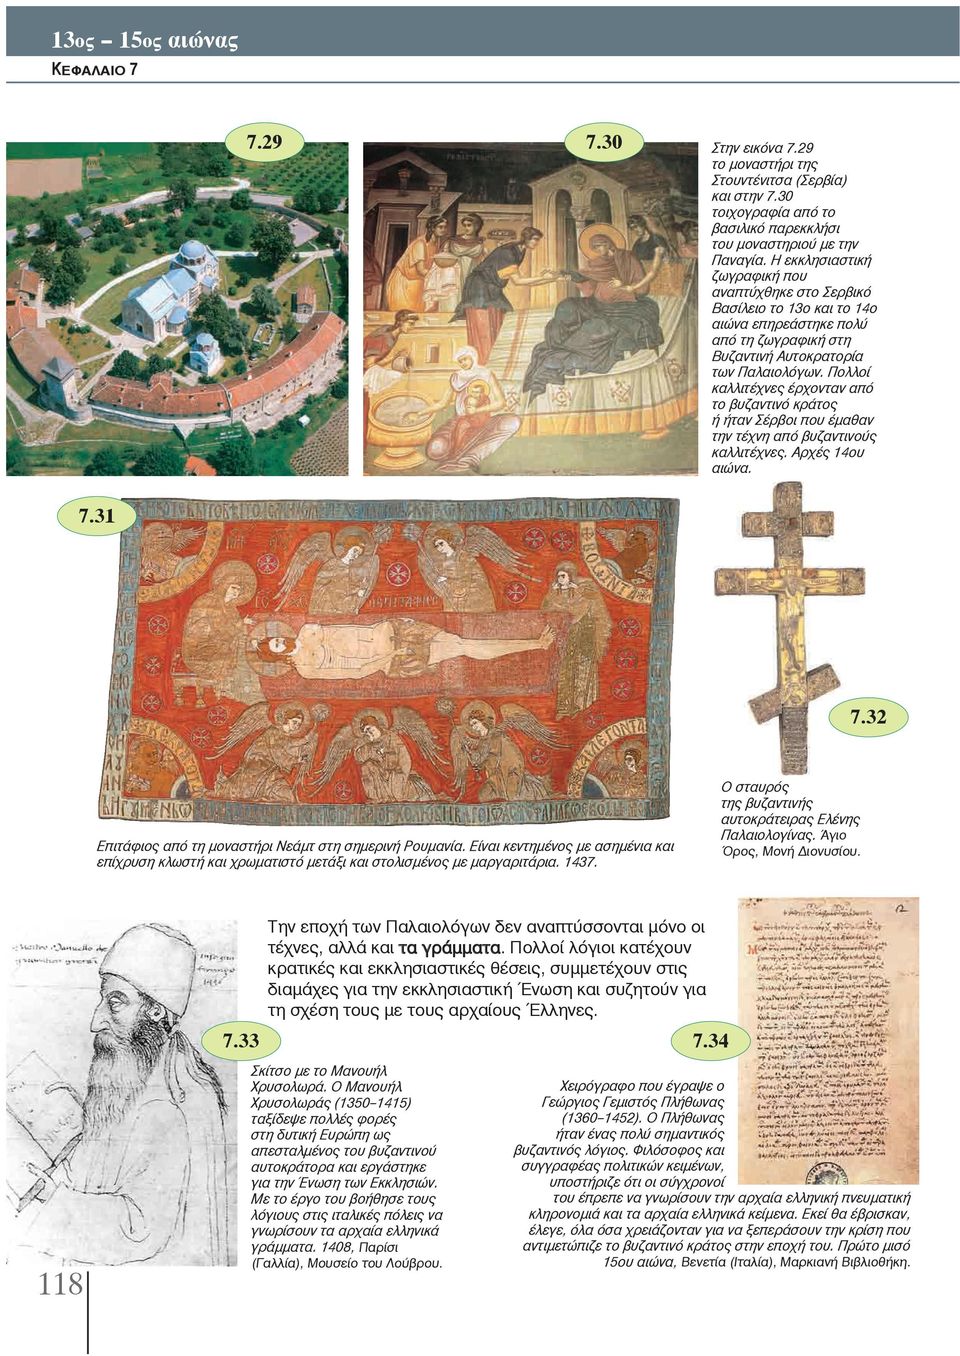 Πολλοί καλλιτέχνες έρχονταν από το βυζαντινό κράτος ή ήταν Σέρβοι που έμαθαν την τέχνη από βυζαντινούς καλλιτέχνες. Αρχές 14ου αιώνα. 7.31 7.